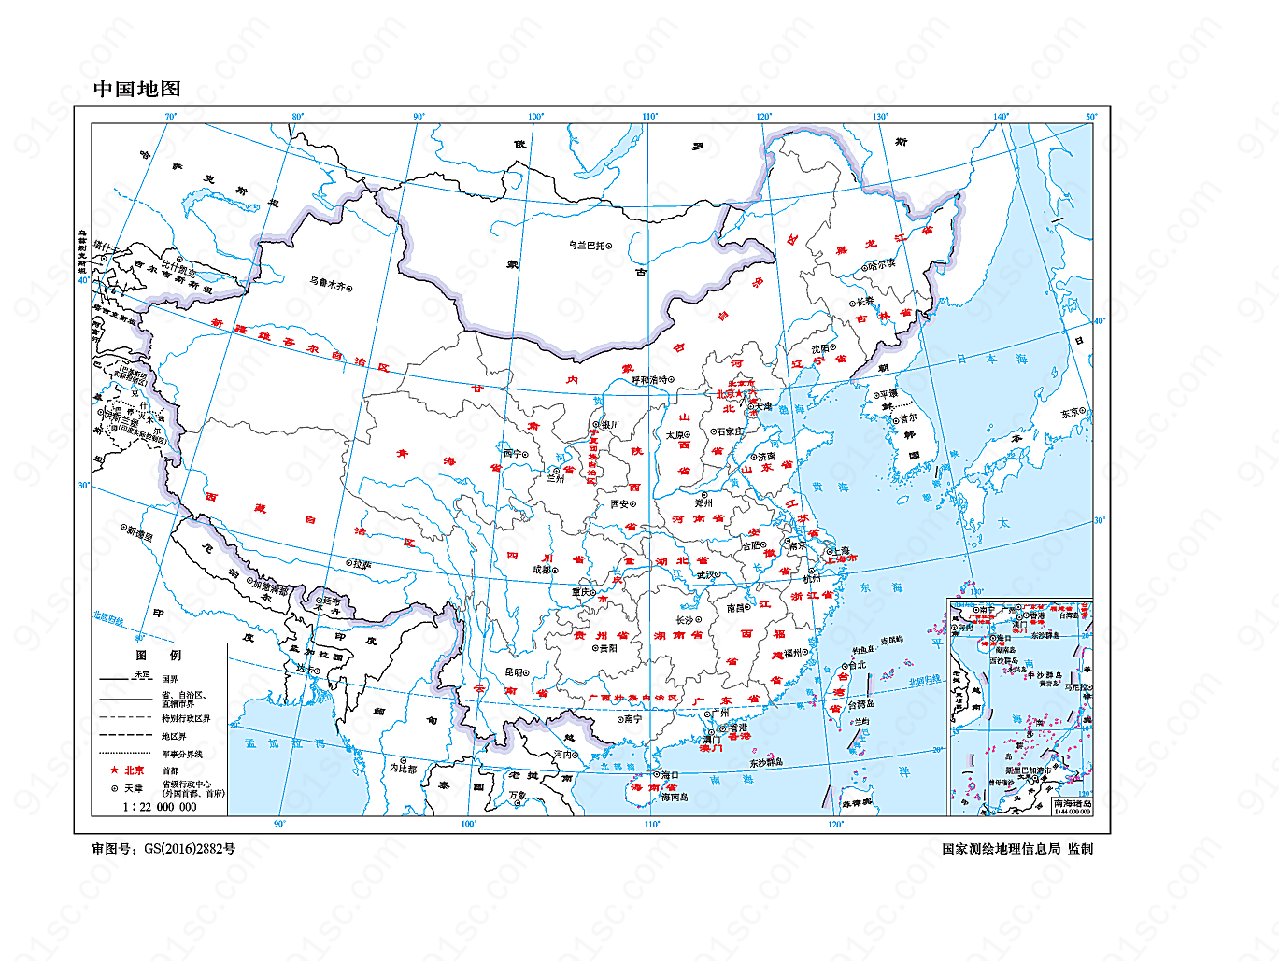 中国地图1:2200万16开有邻国线划一设计